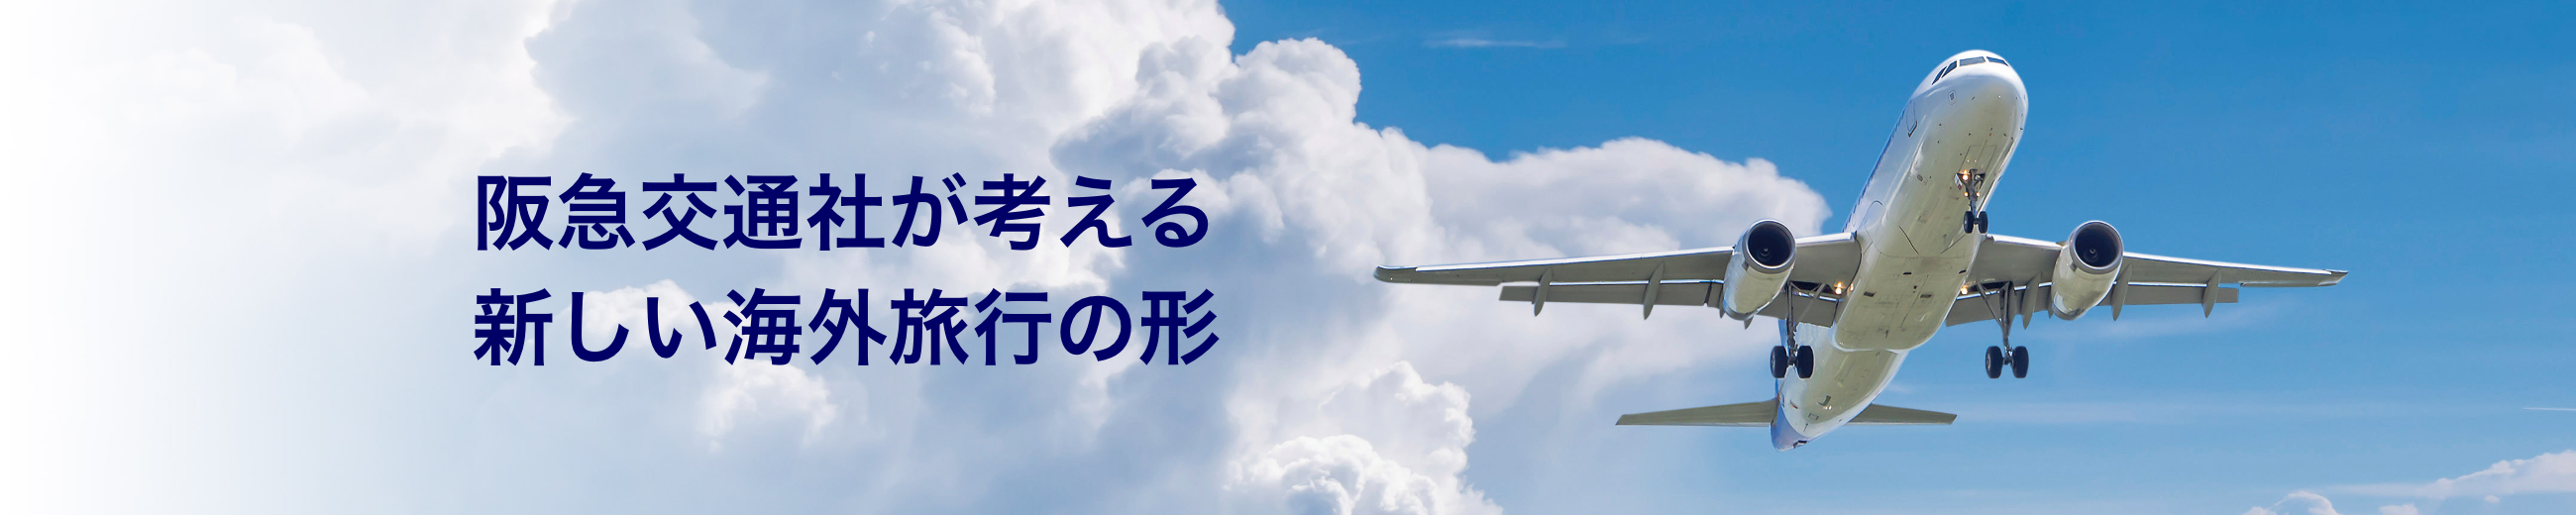 阪急交通社が考える新しい海外旅行の形